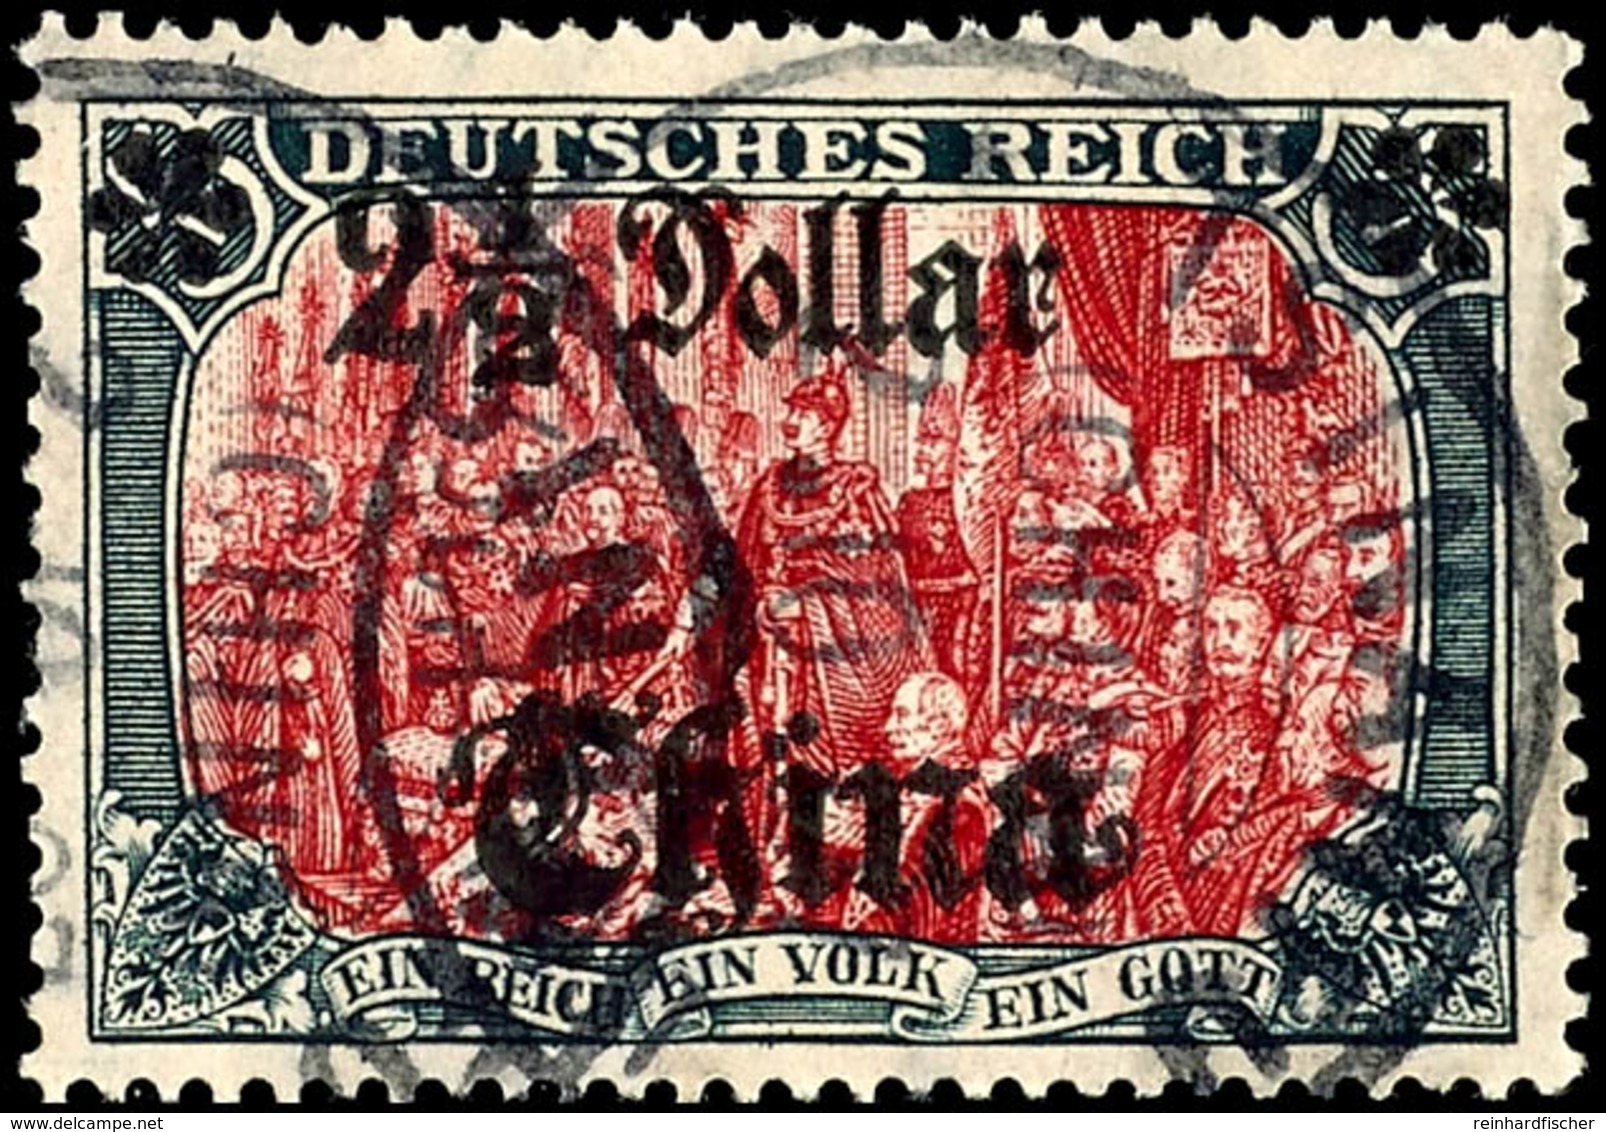 5 Mark Deutsches Reich Mit Wasserzeichen, Aufdruck "China 2 1/2 Dollar", Tadellos, Gestempelt "TSINANFU", Geprüft Steuer - China (offices)